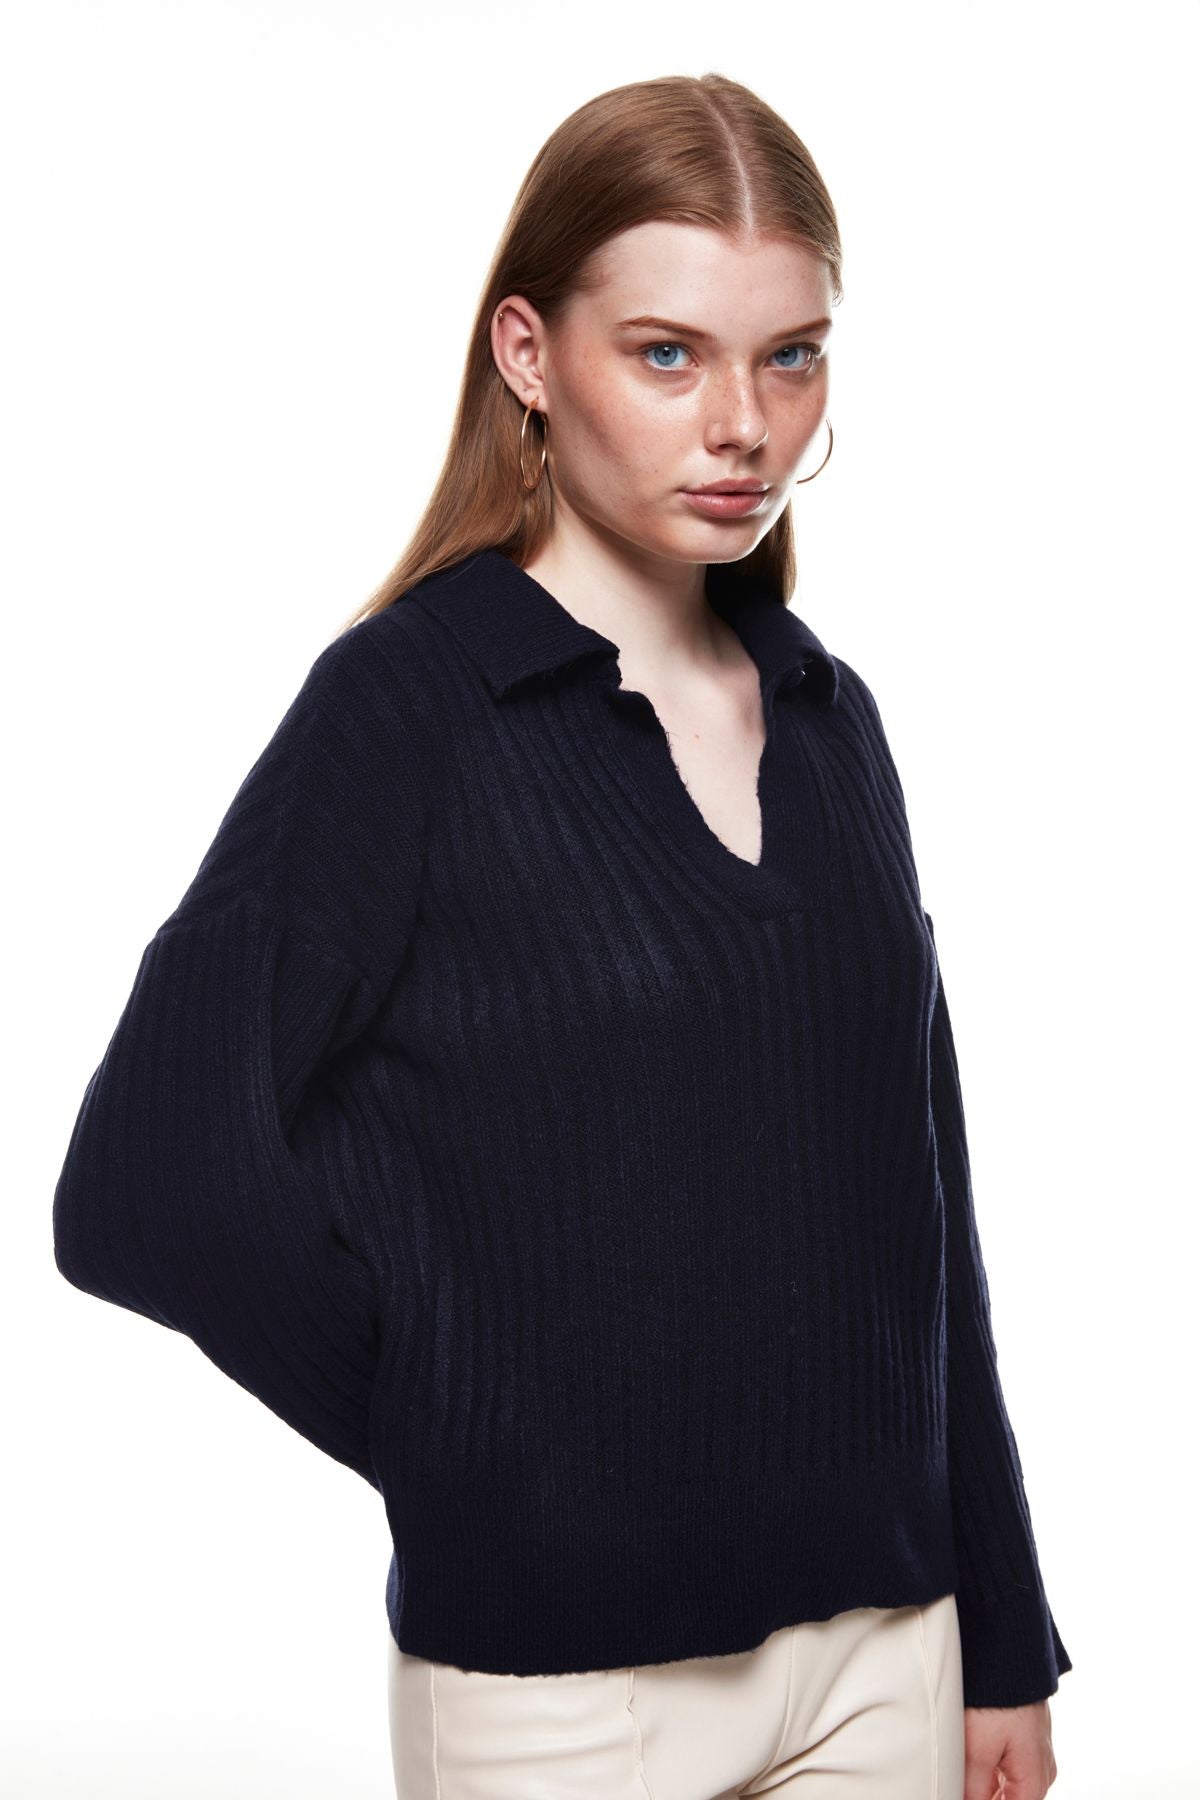 Polo Neck Knitwear Sweater Navy Blue